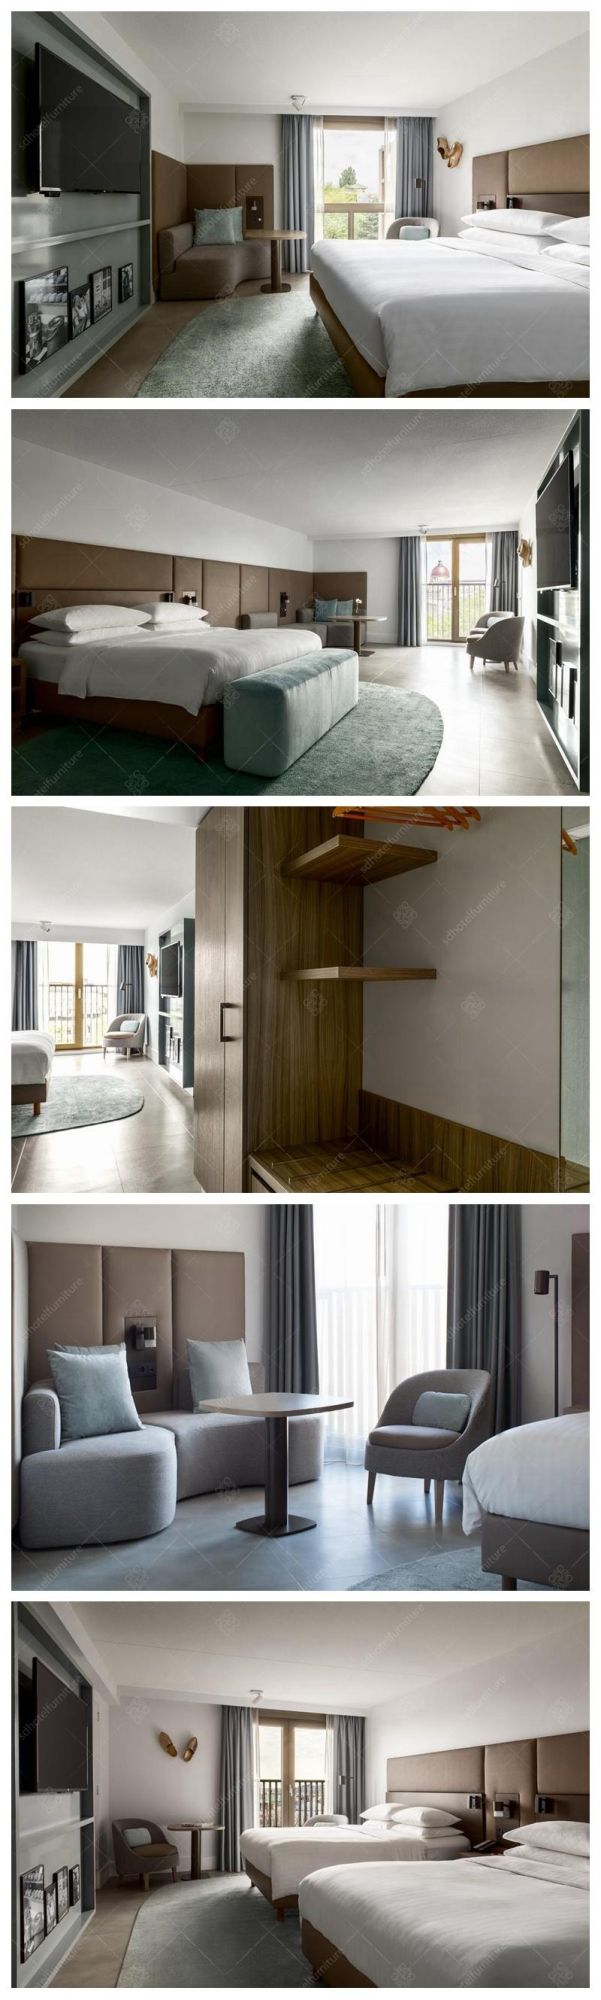 Modern Hotel King Size Bedroom Furniture Sets for 4-5 Stars